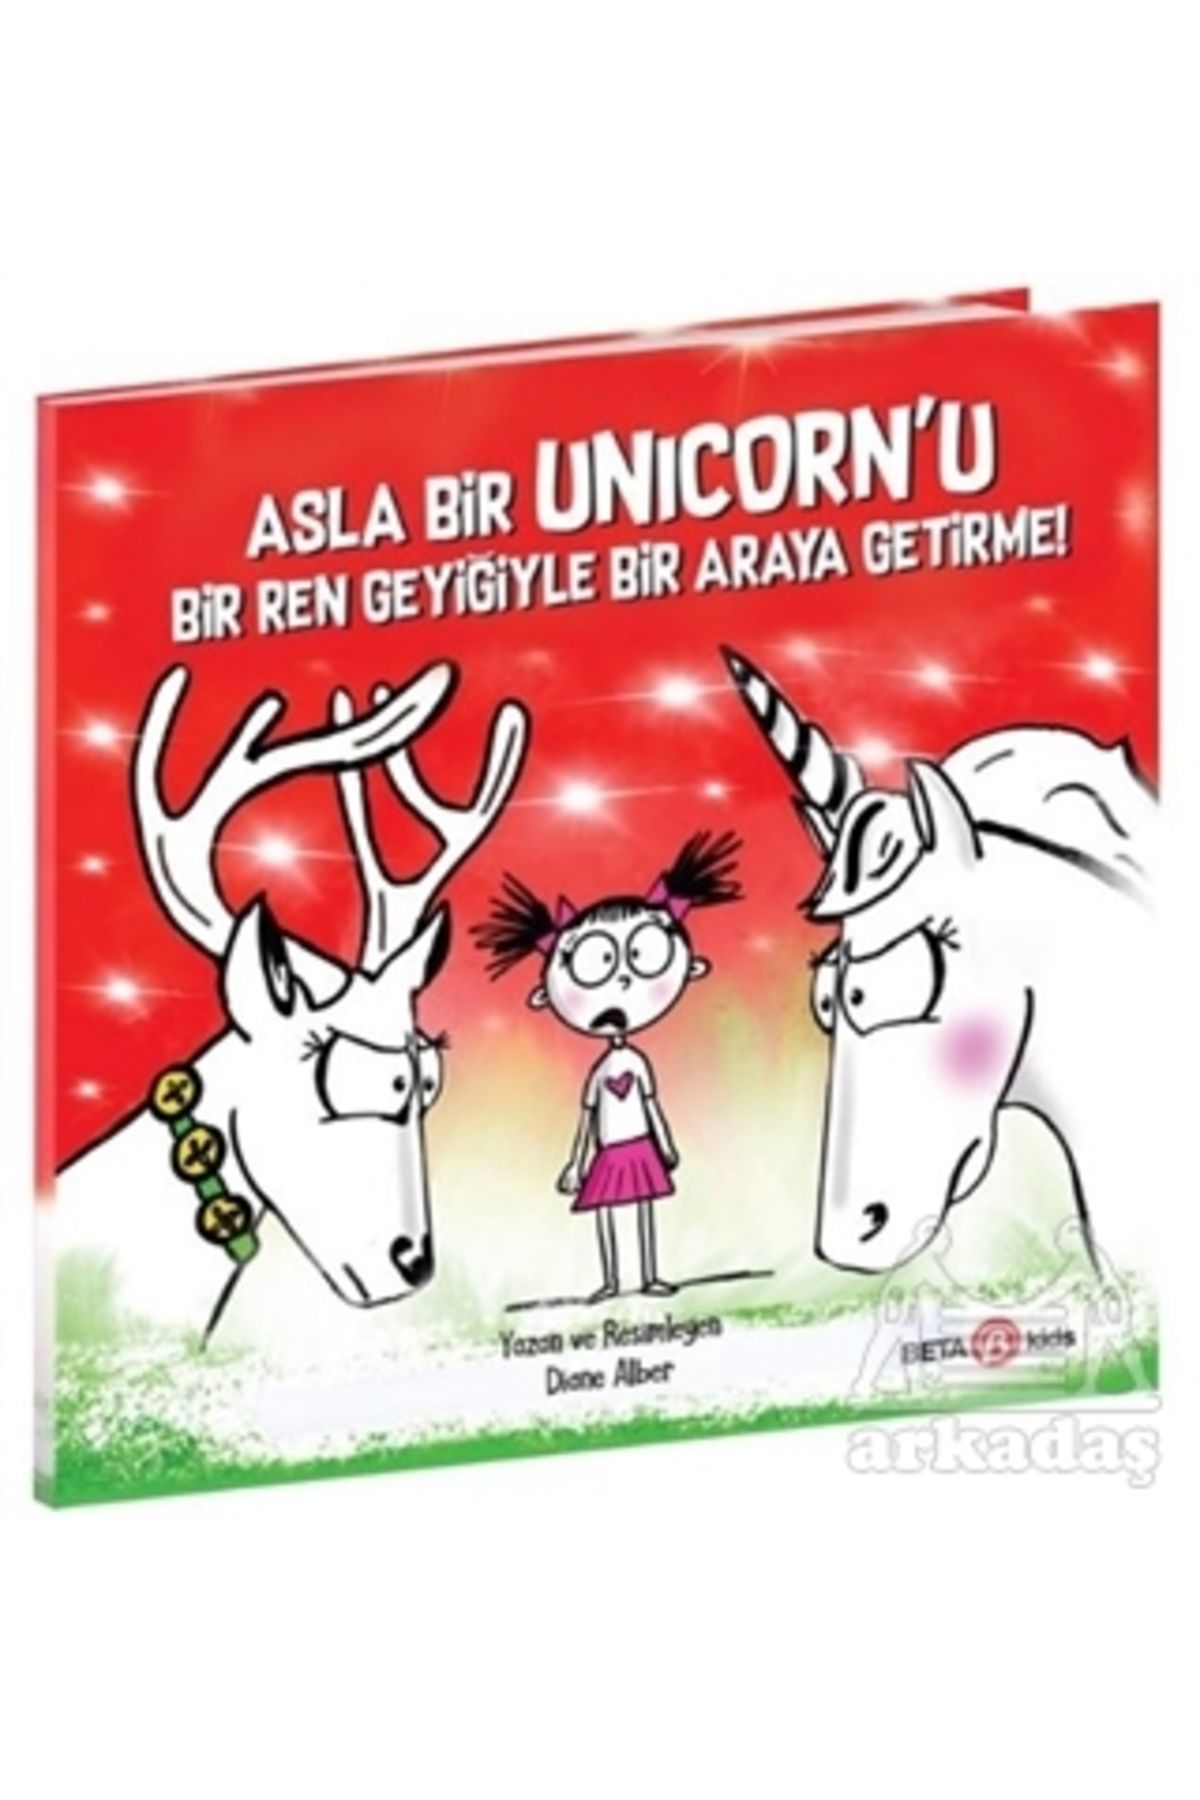 Beta Kids Asla Bir Unicorn’U Bir Ren Geyiğiyle Bir Araya Getirme!